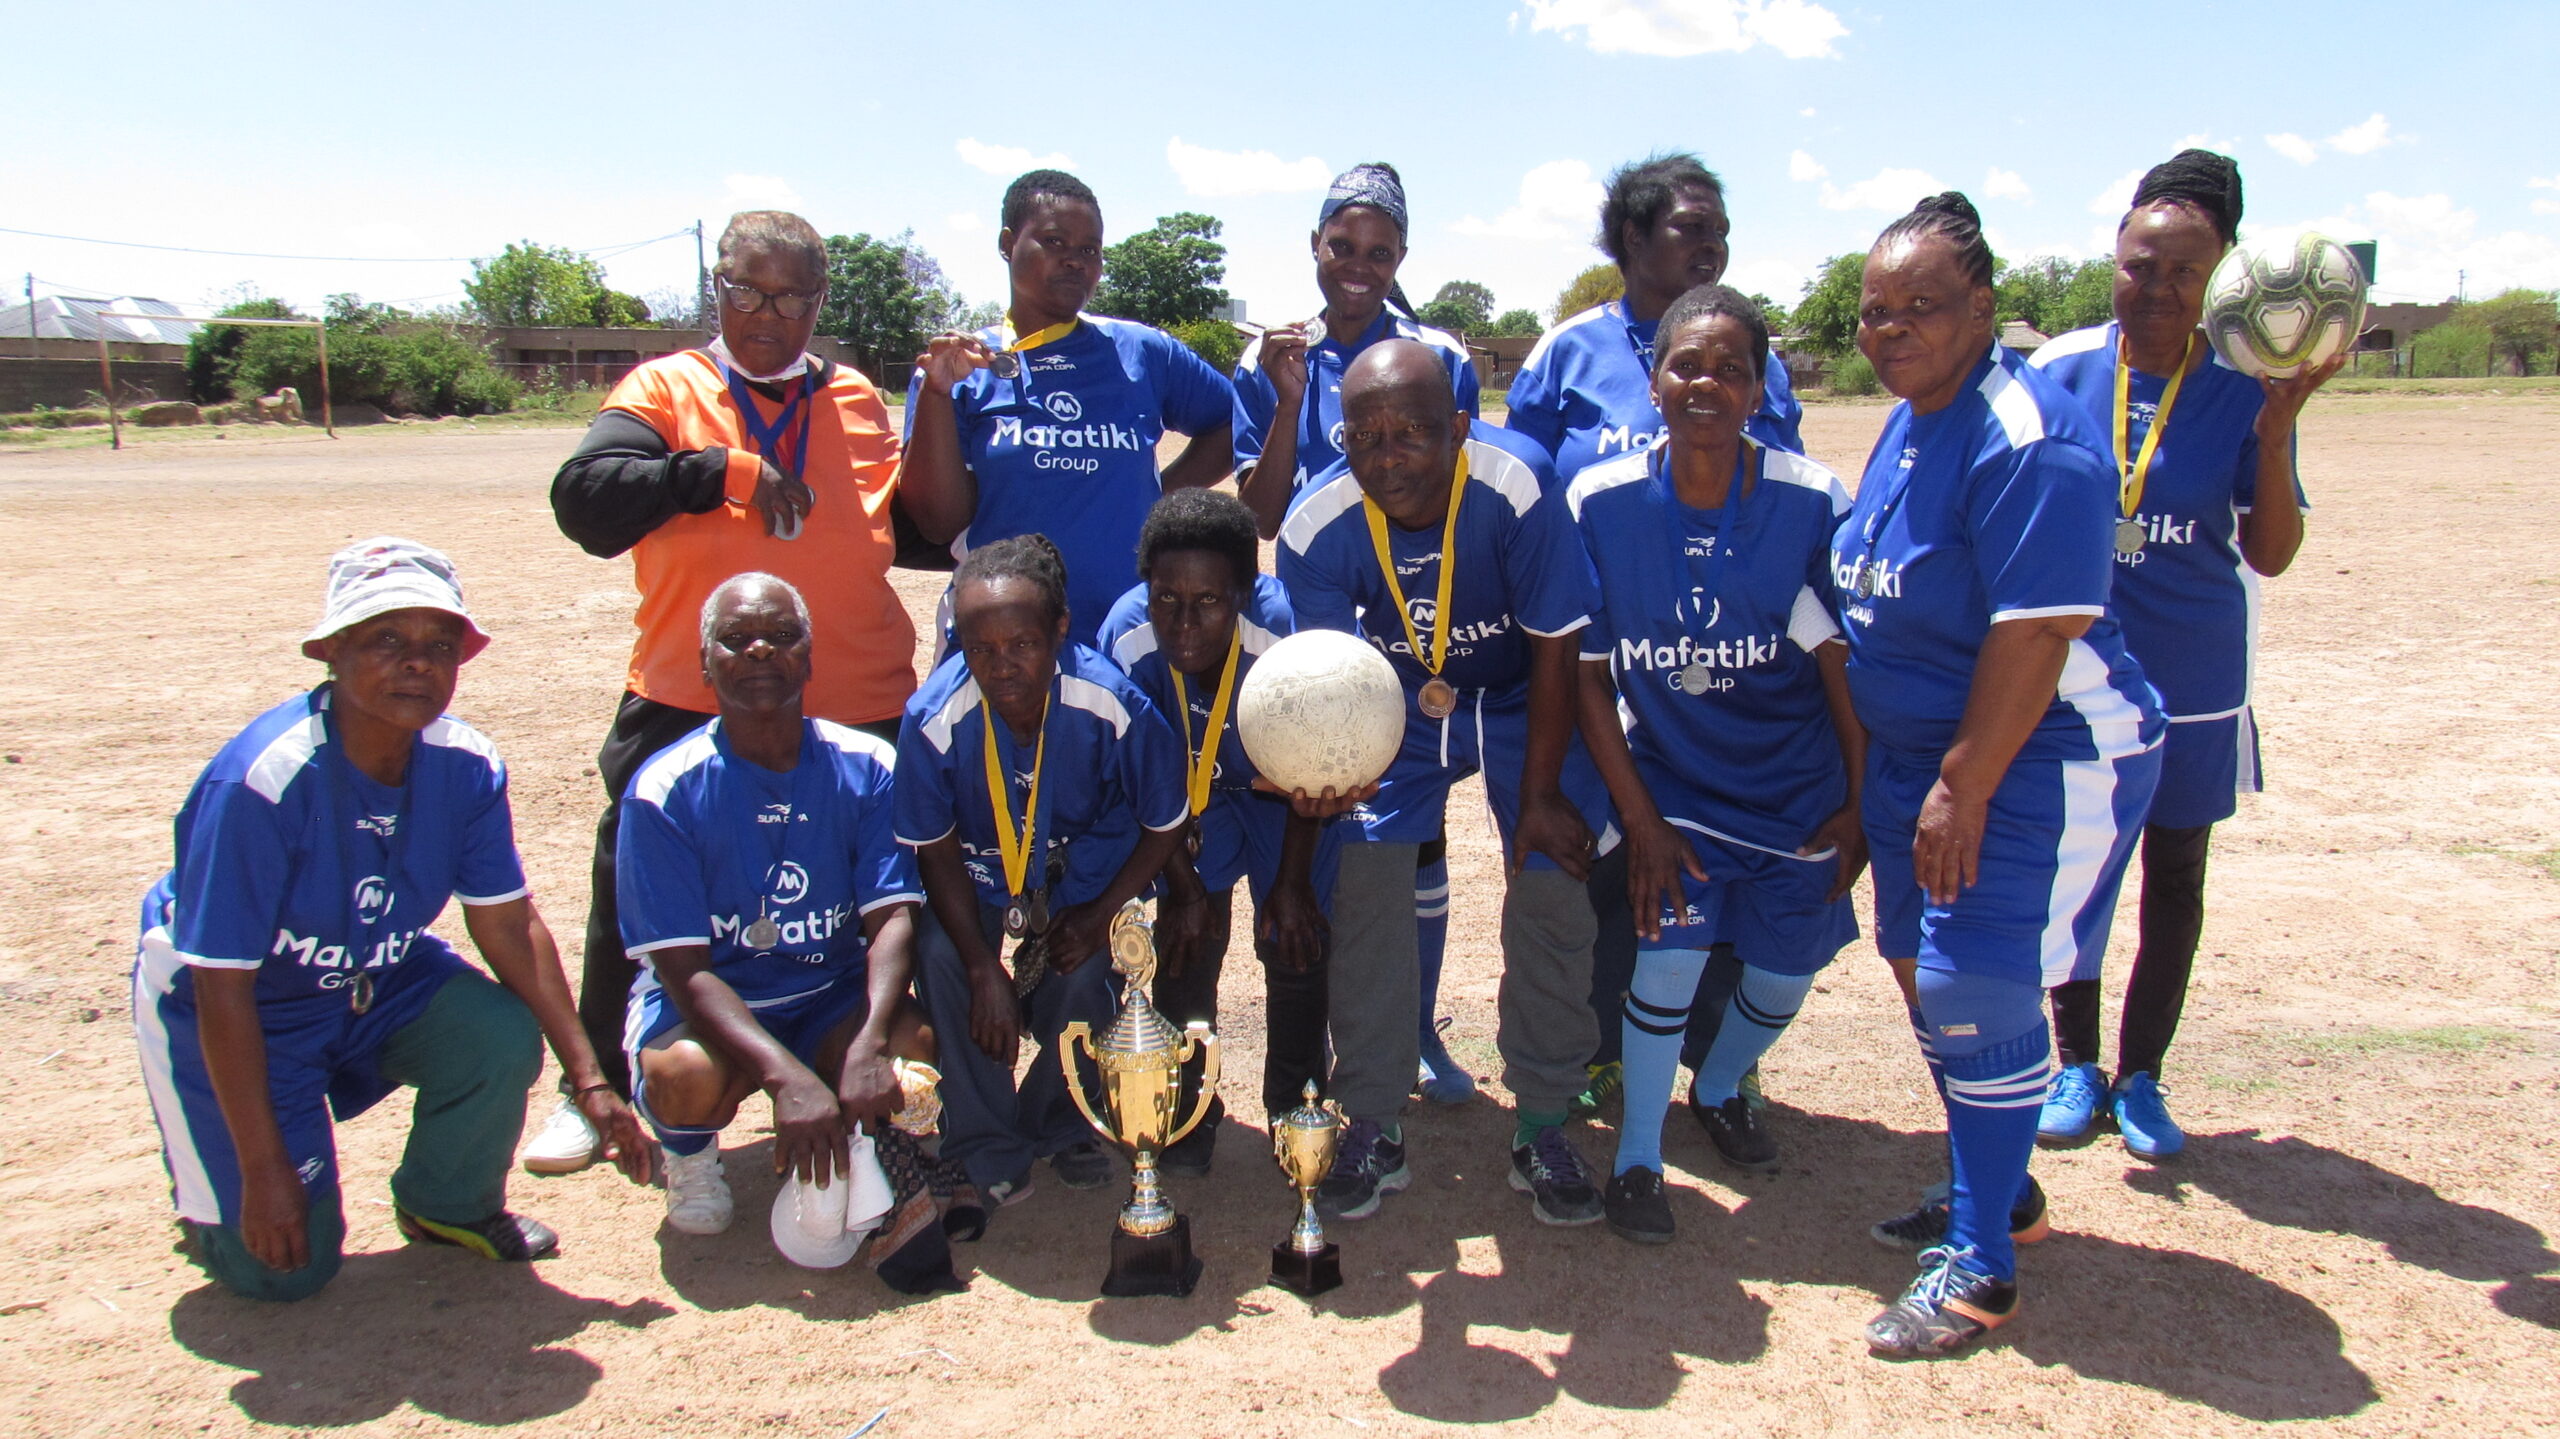 The Women of Hope soccer team in Marokolong, Hammanskraal, Tshwane photo by Dimakatso Modipa